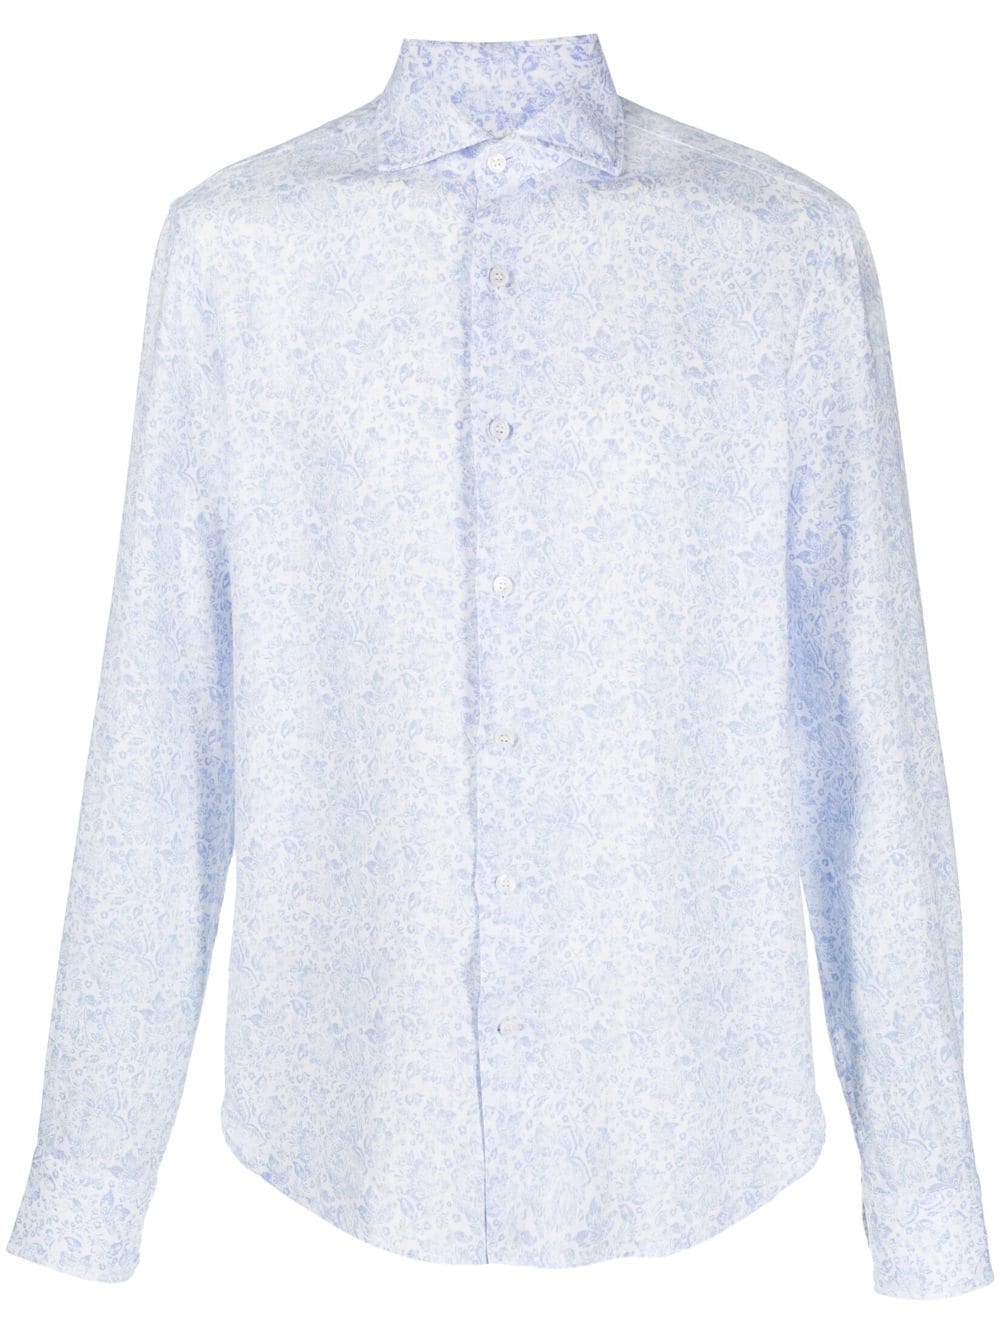 floral-print linen shirt